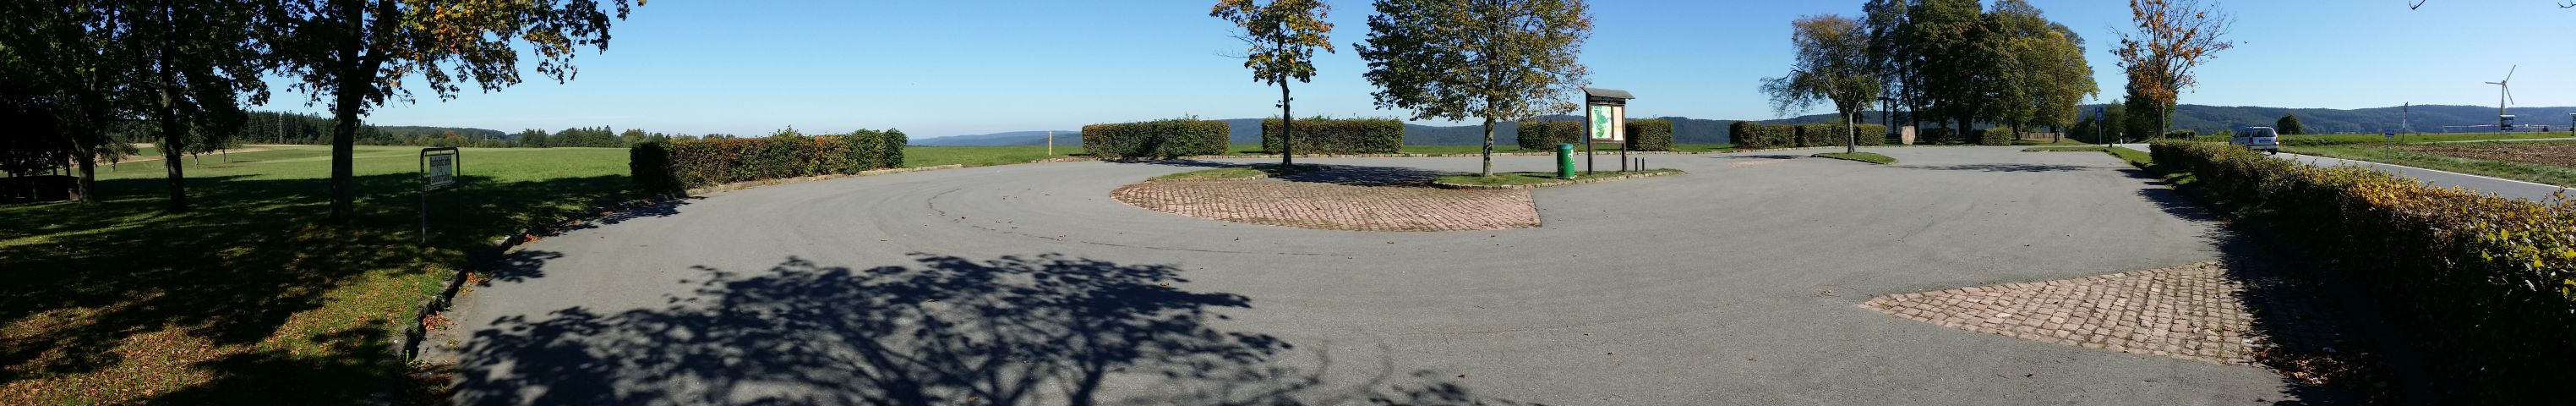 Parkplatz auerhalb von Beerfelden. Im Hintergrund ist der Beerfelder Galgen zu sehen.